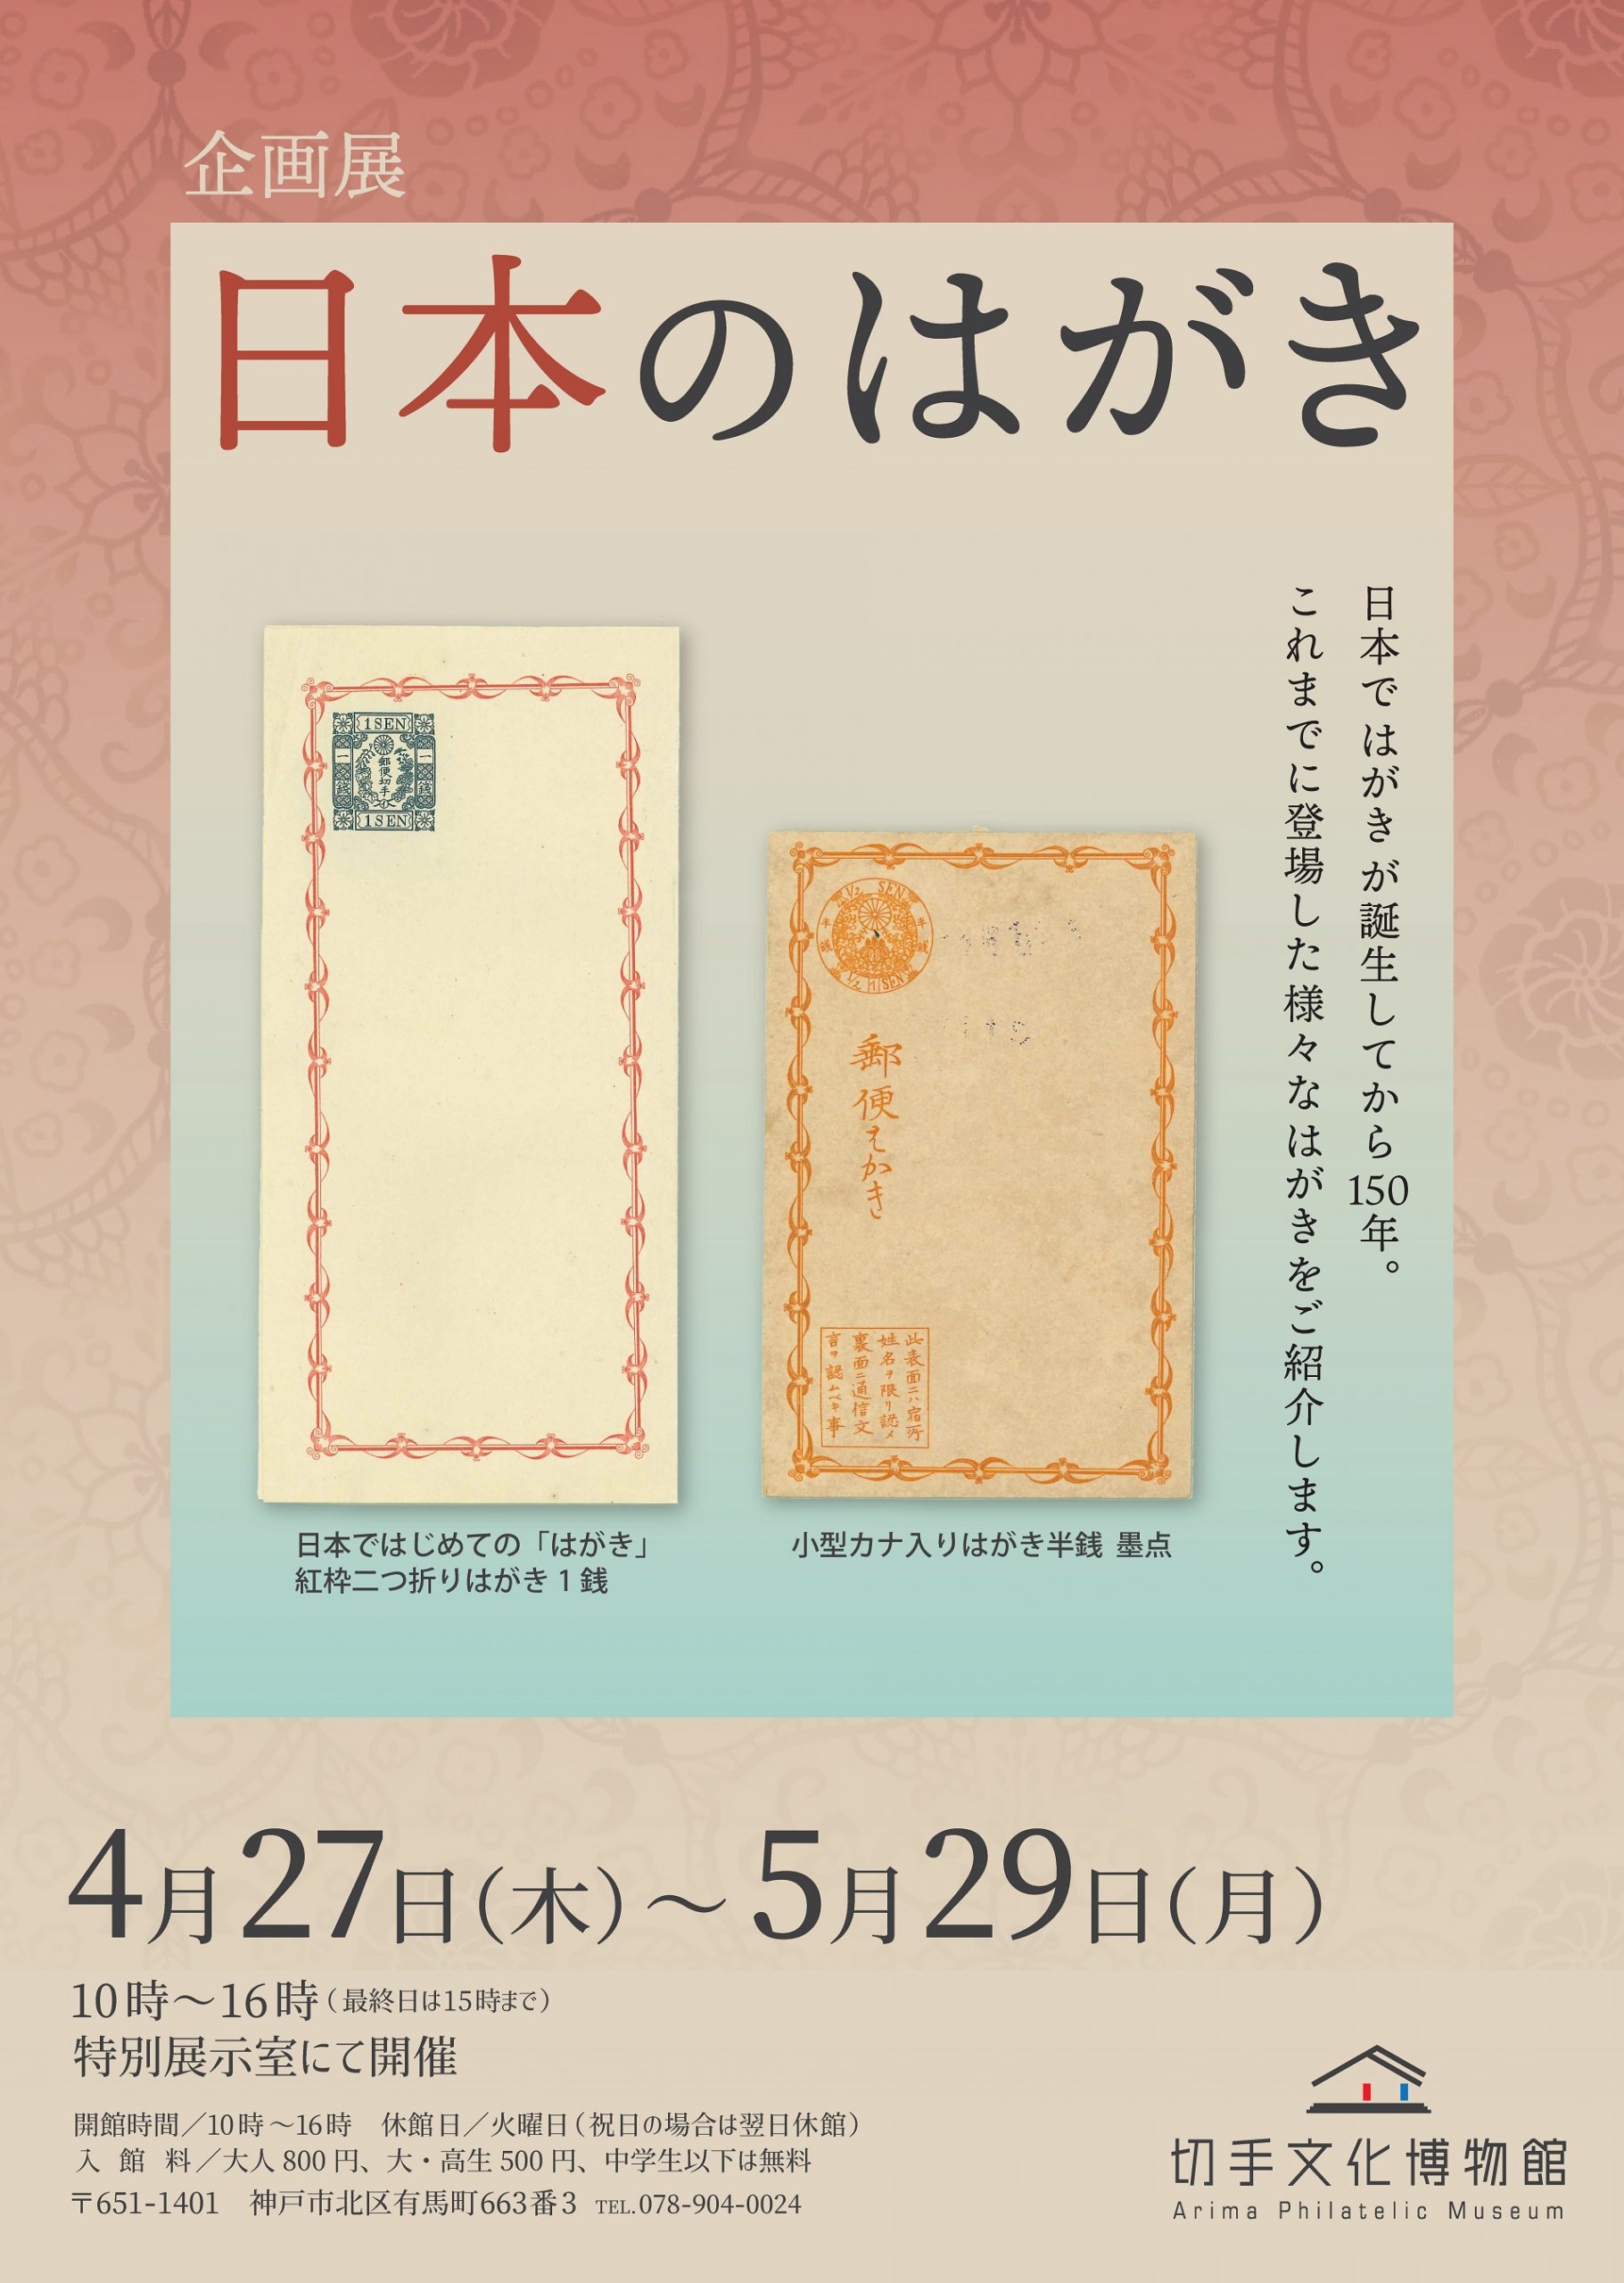 企画展『日本のはがき』」切手文化博物館 – Feel KOBE 神戸公式観光サイト